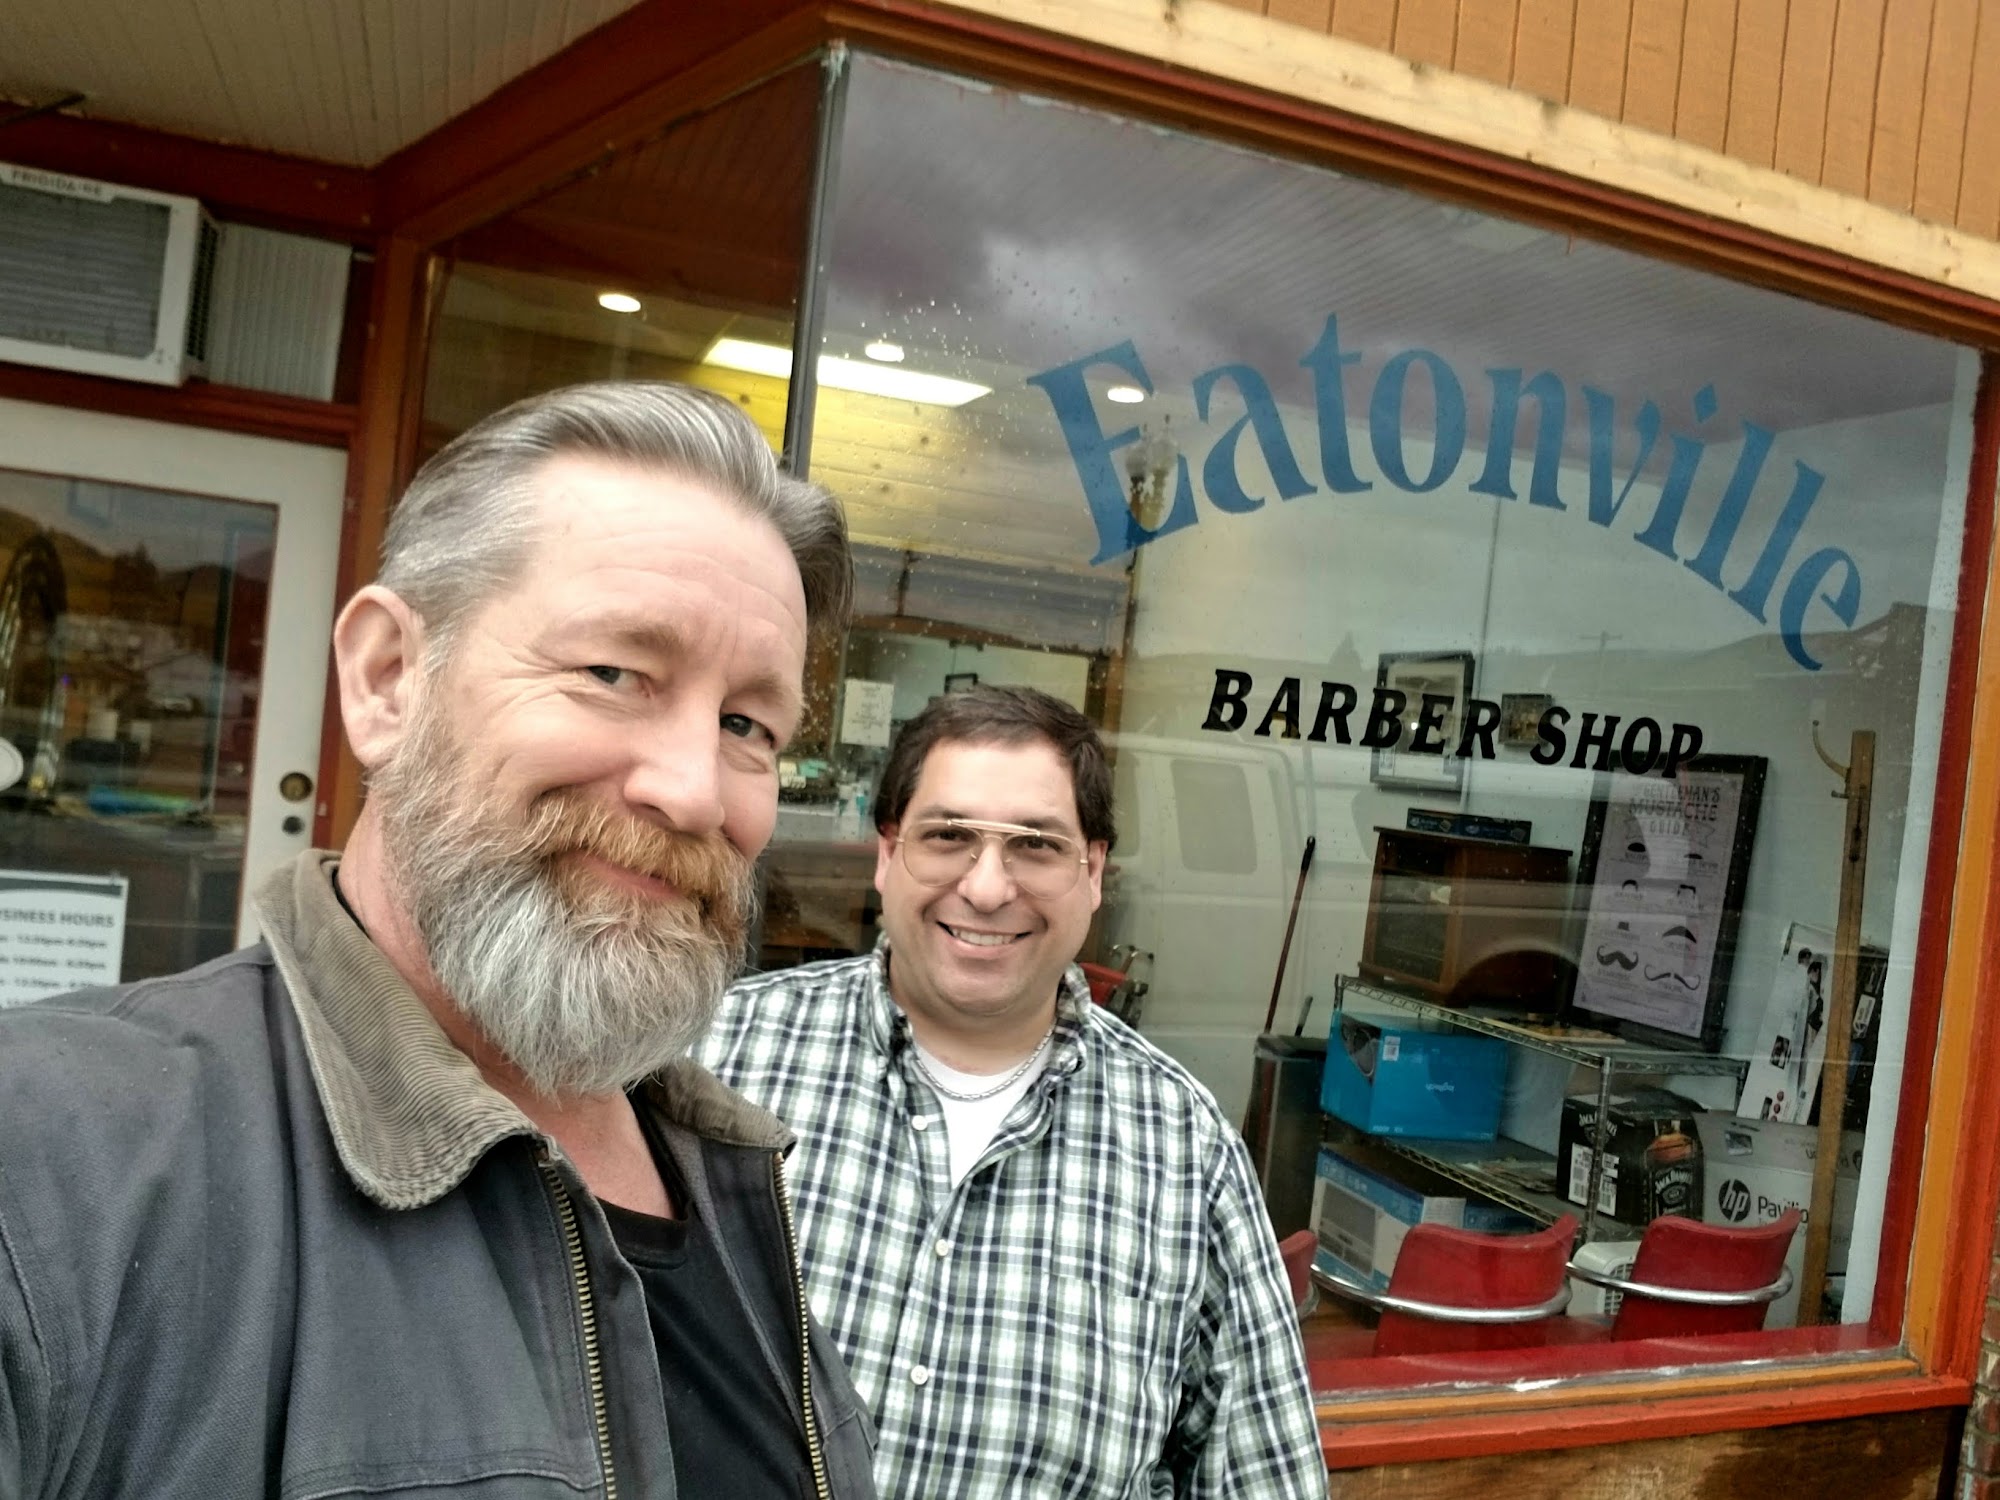 Eatonville Barber Shop 110 Mashell Ave N, Eatonville Washington 98328